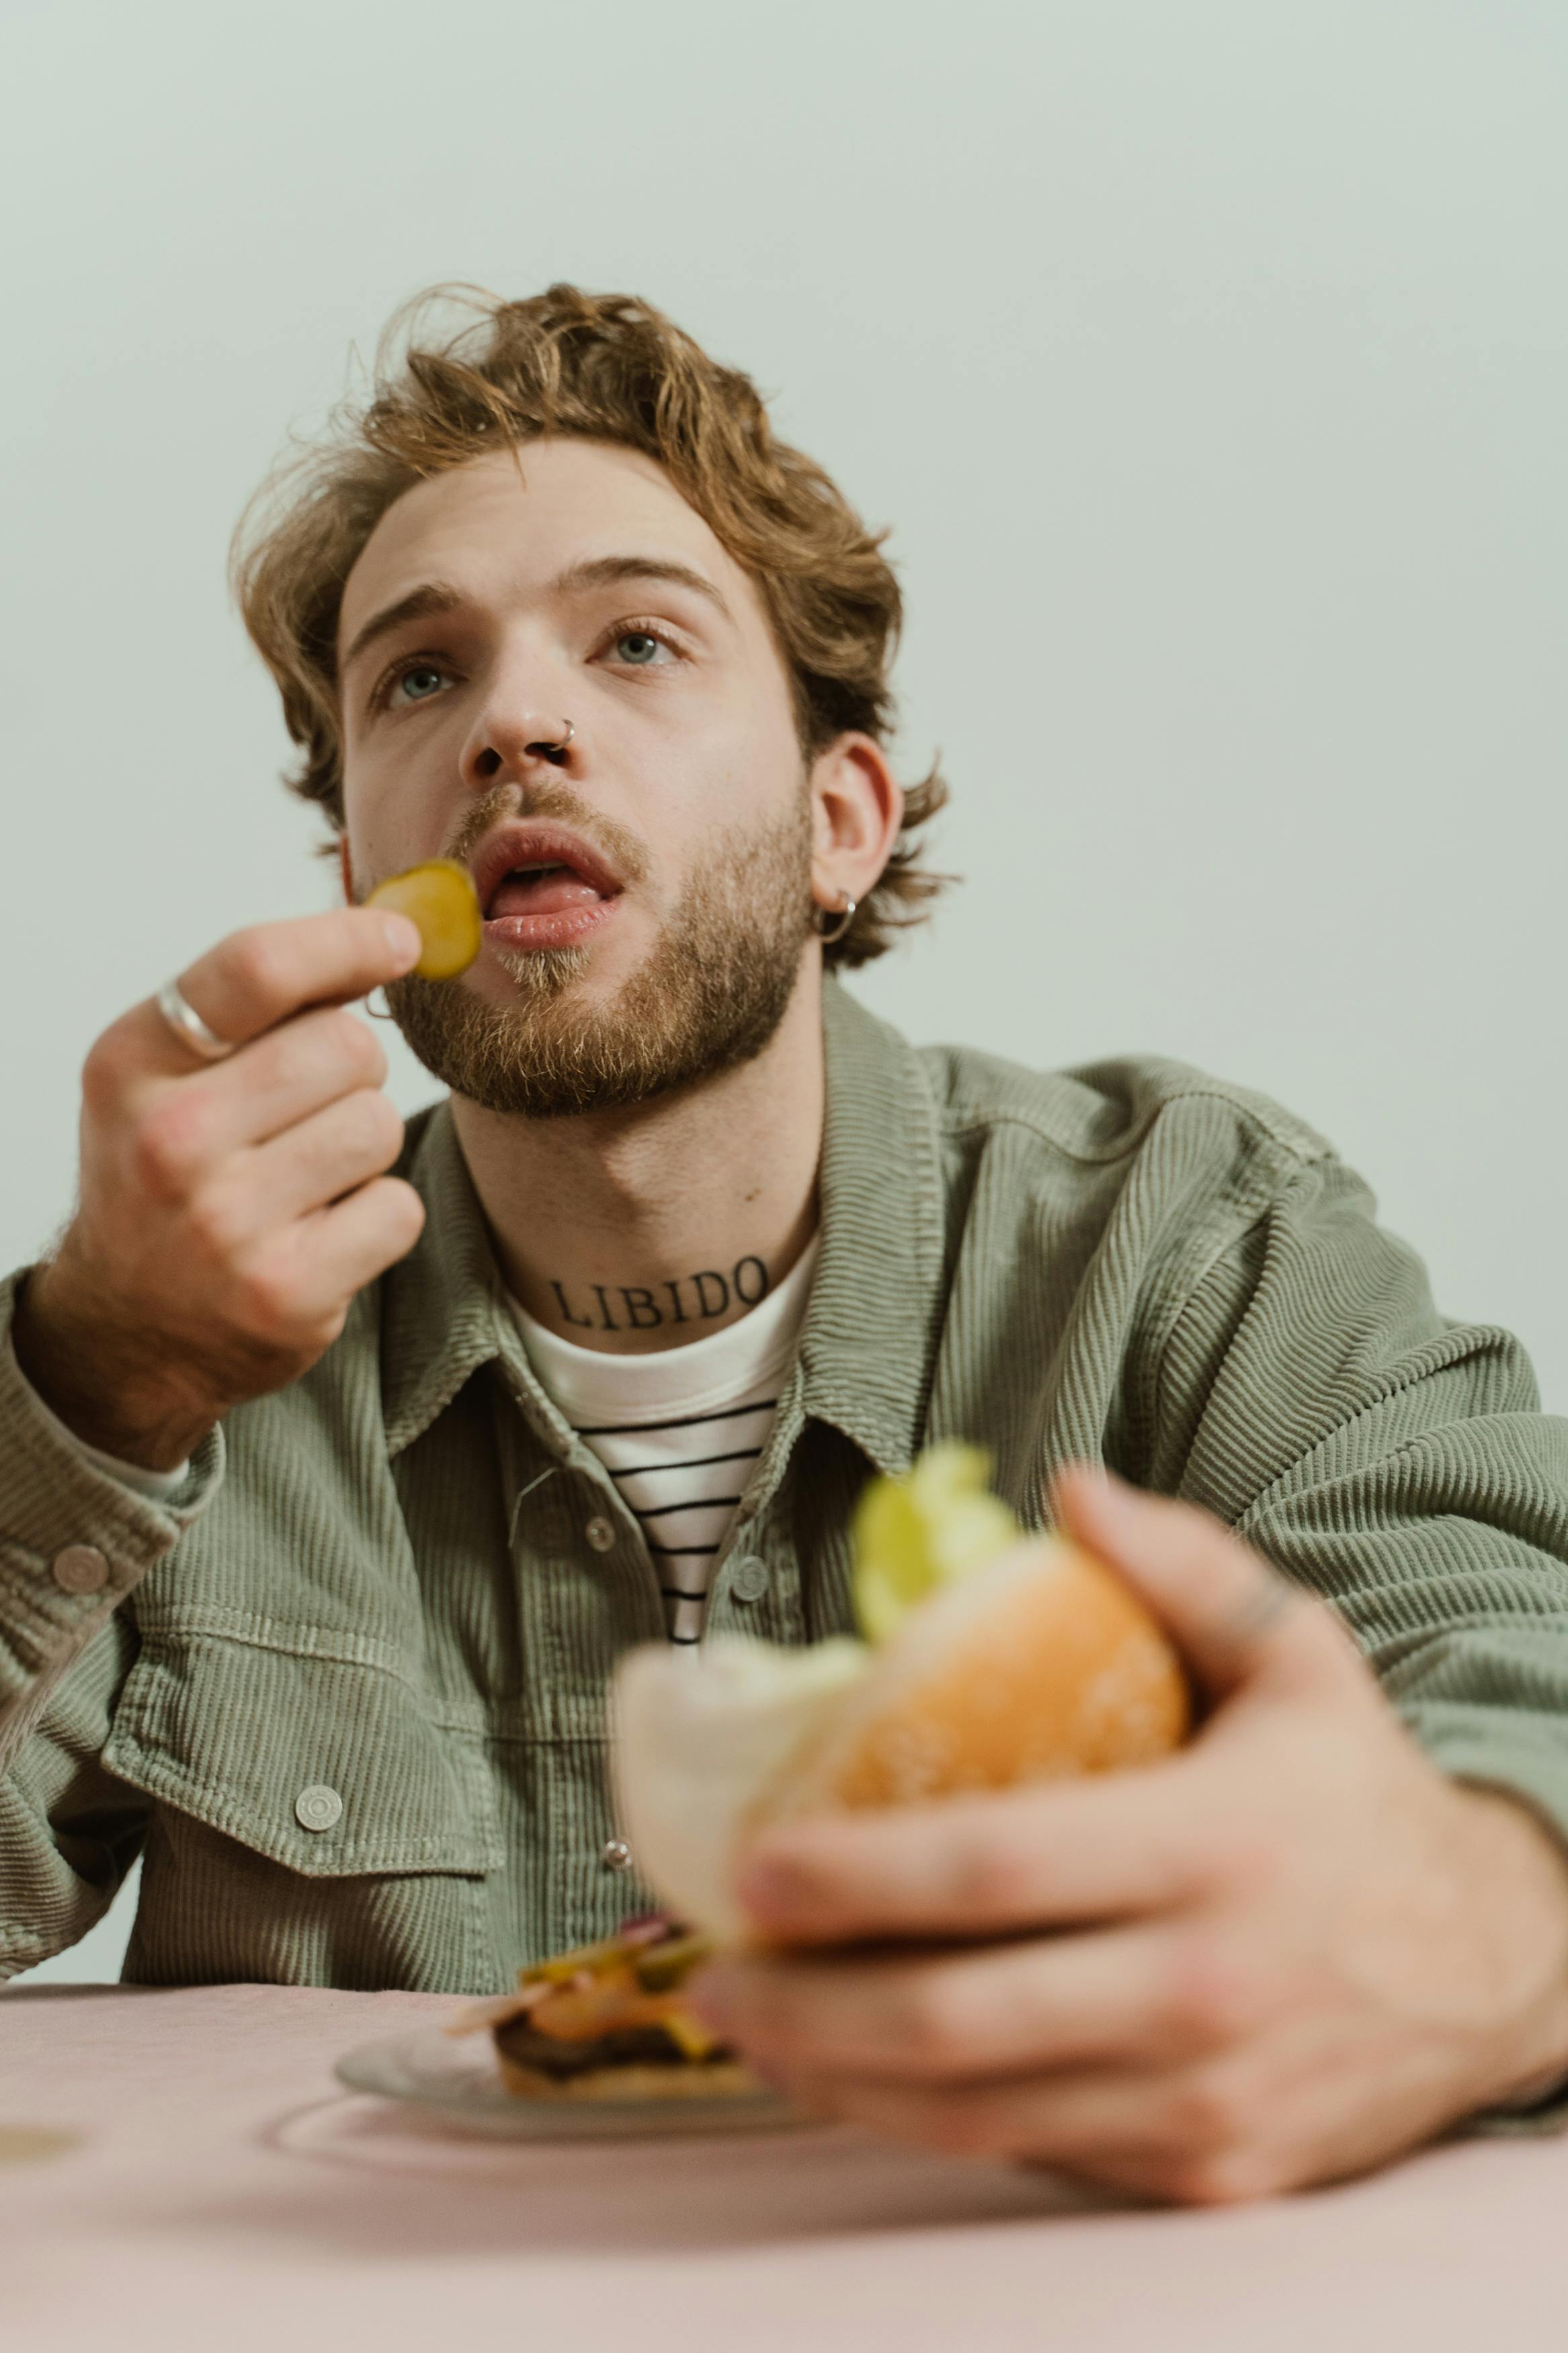 A man eating a burger | Source: Shutterstock